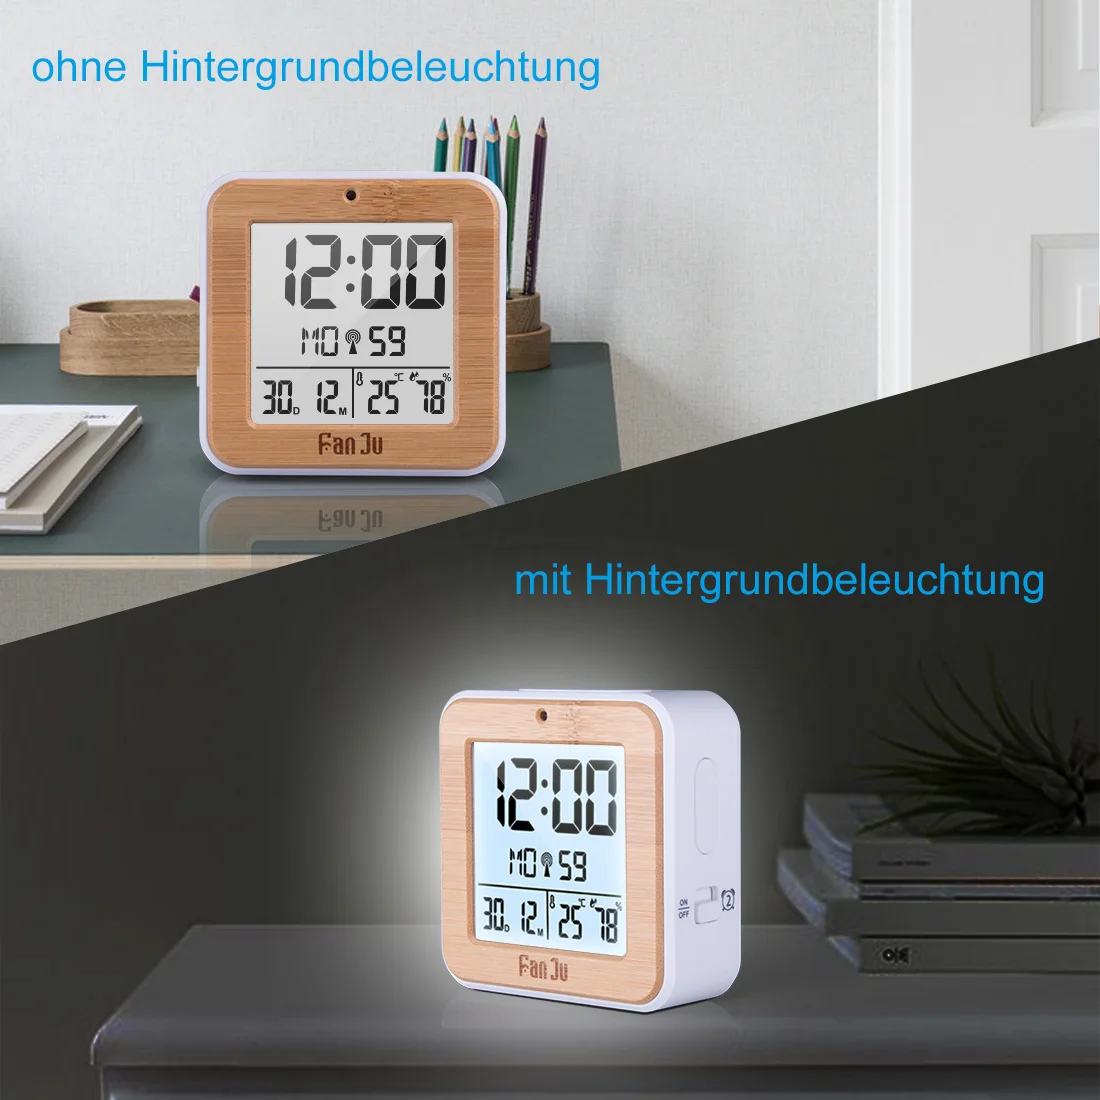 FanJu FJ3533 Цифровой Будильник Светодиодный Настольные часы температура влажность двойной будильник Автоматическая Подсветка Повтор даты